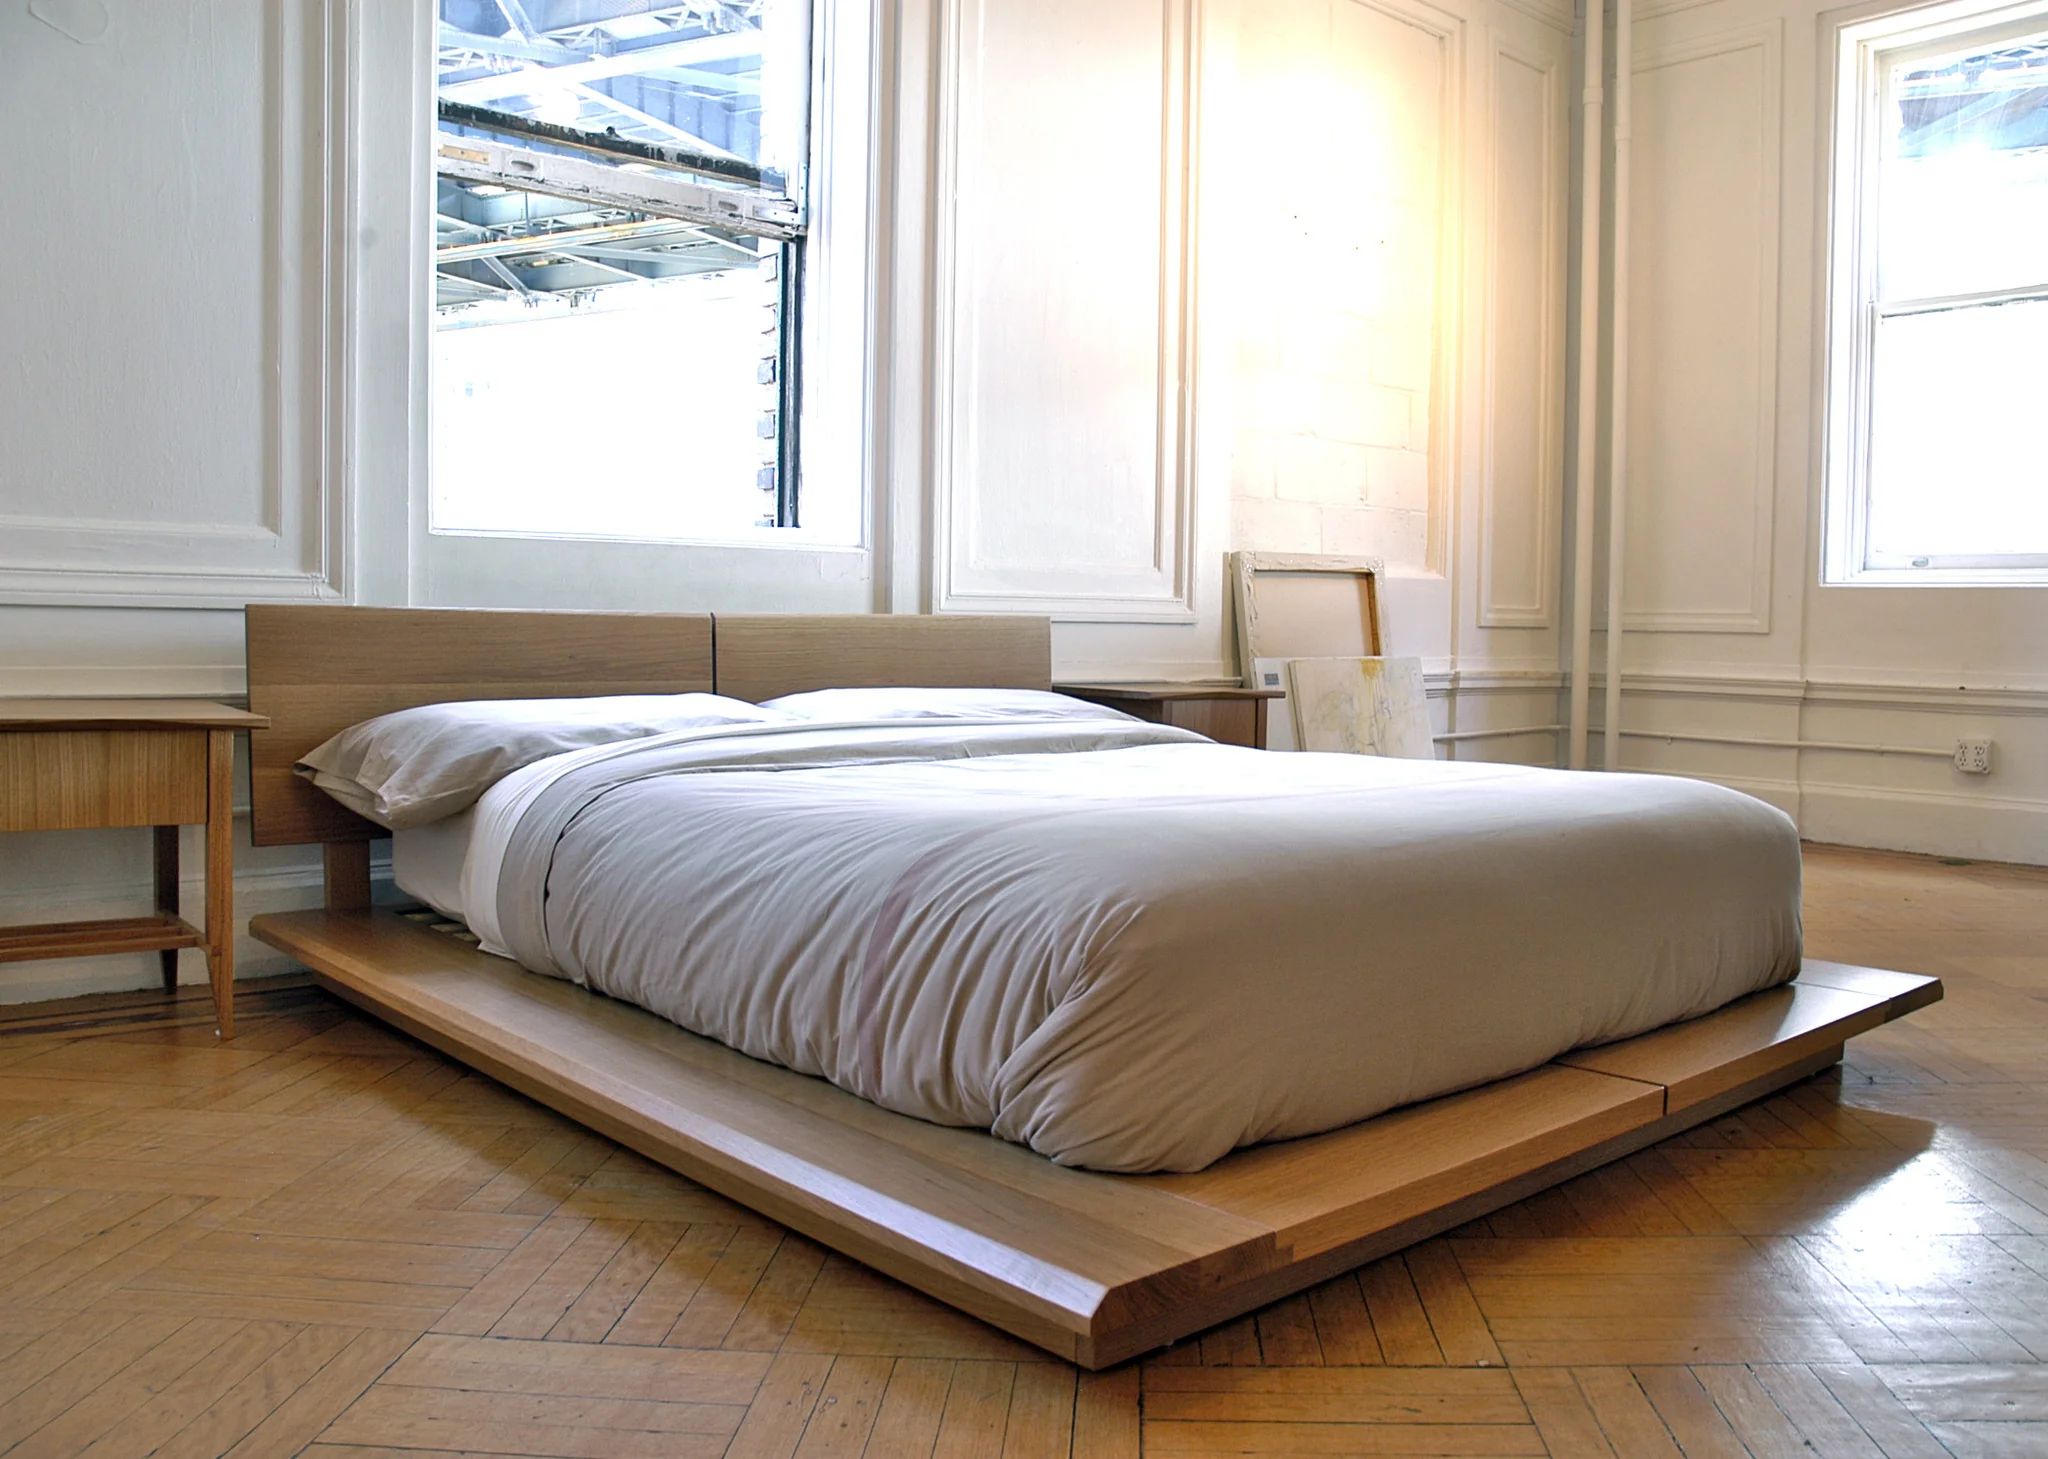 Thiết kế giường ngủ kiểu Nhật đẹp, sang trọng bằng gỗ tự nhiên